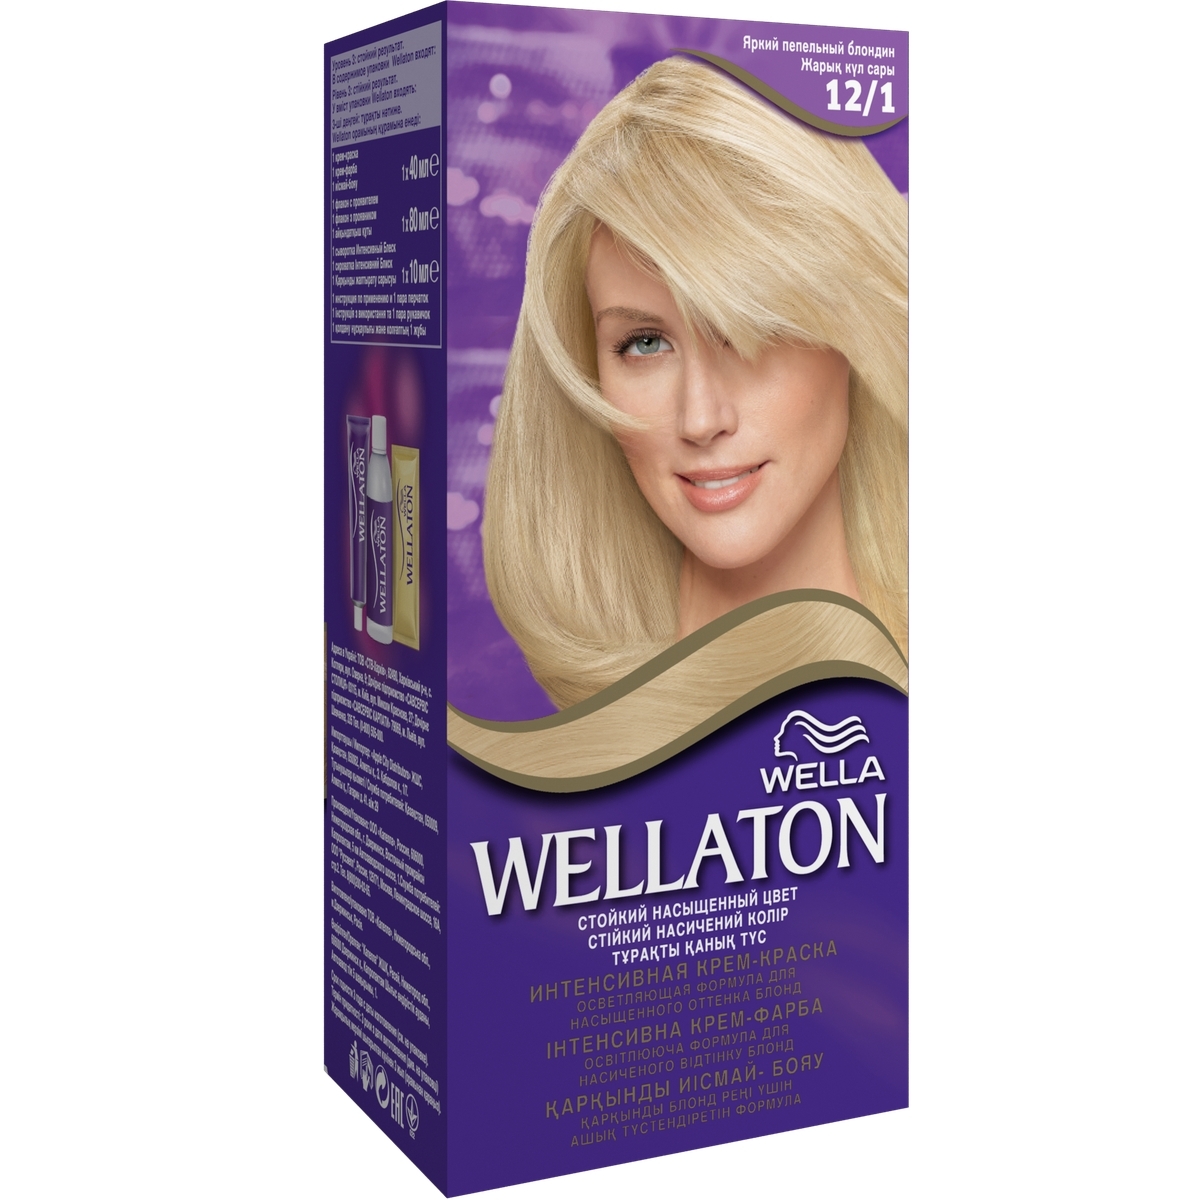 Wella Wellaton